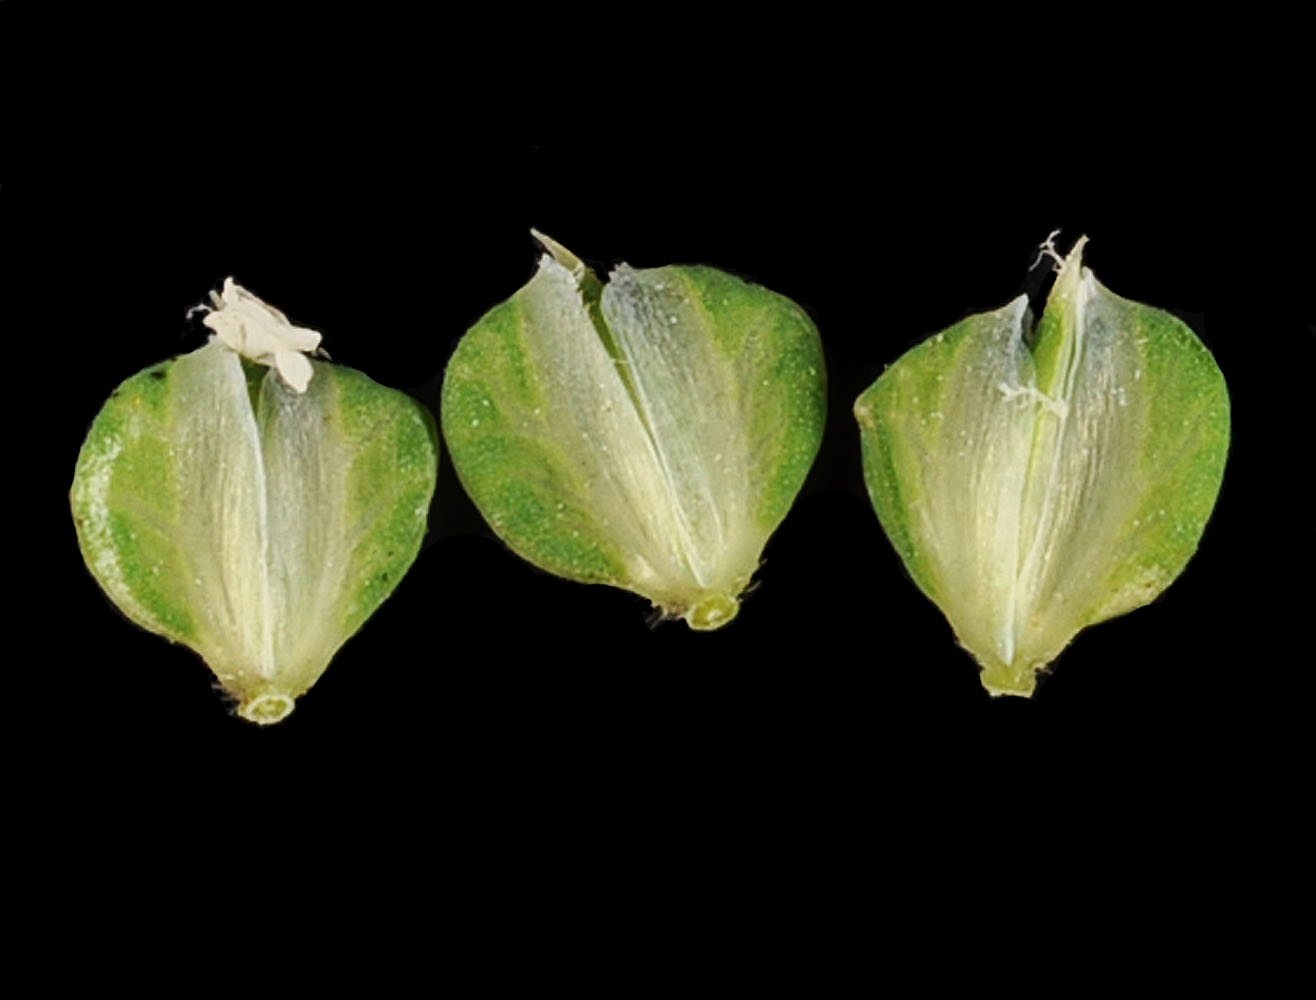 Flora of Eastern Washington Image: Beckmannia syzigachne